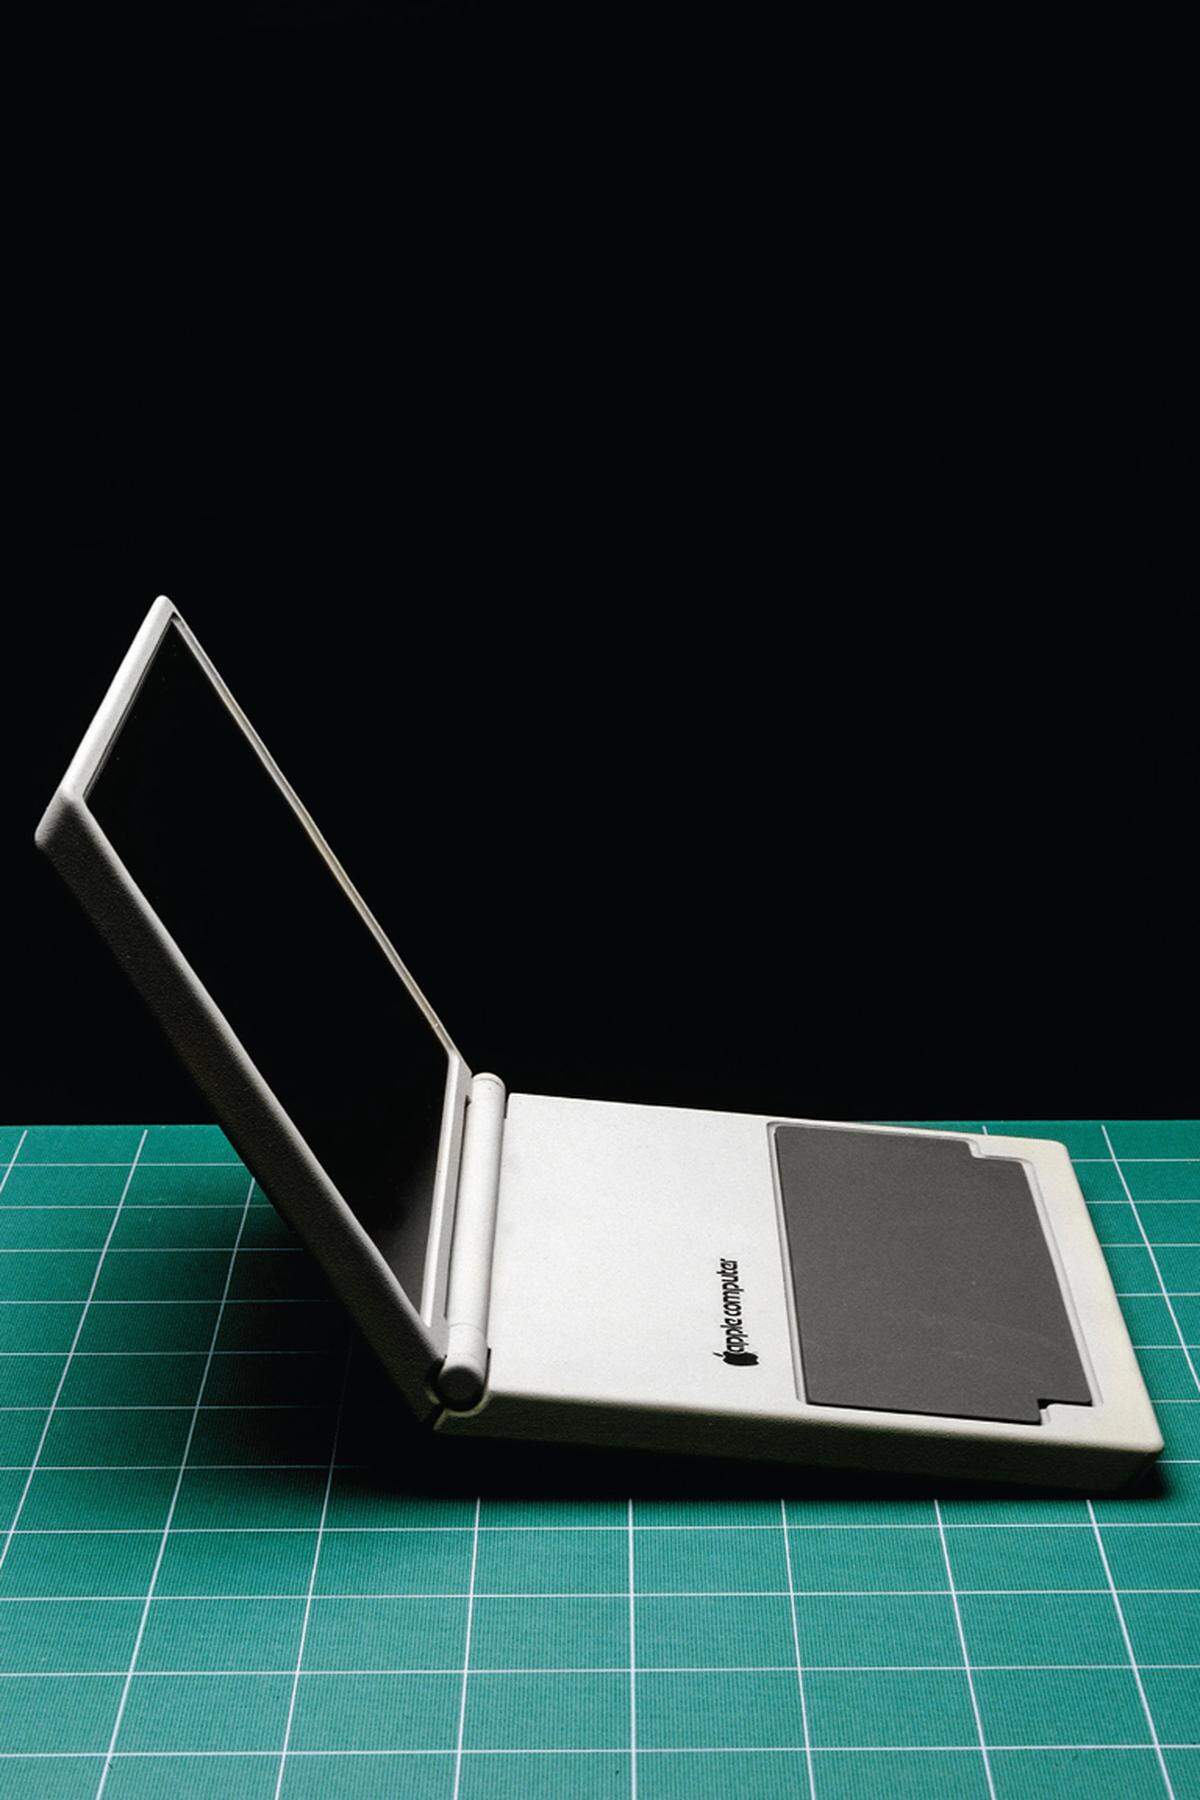 Macbook - konzeptioneller Entwurf 1982(c) Hartmut Esslinger/ frog team/ Arnoldsche Publishers